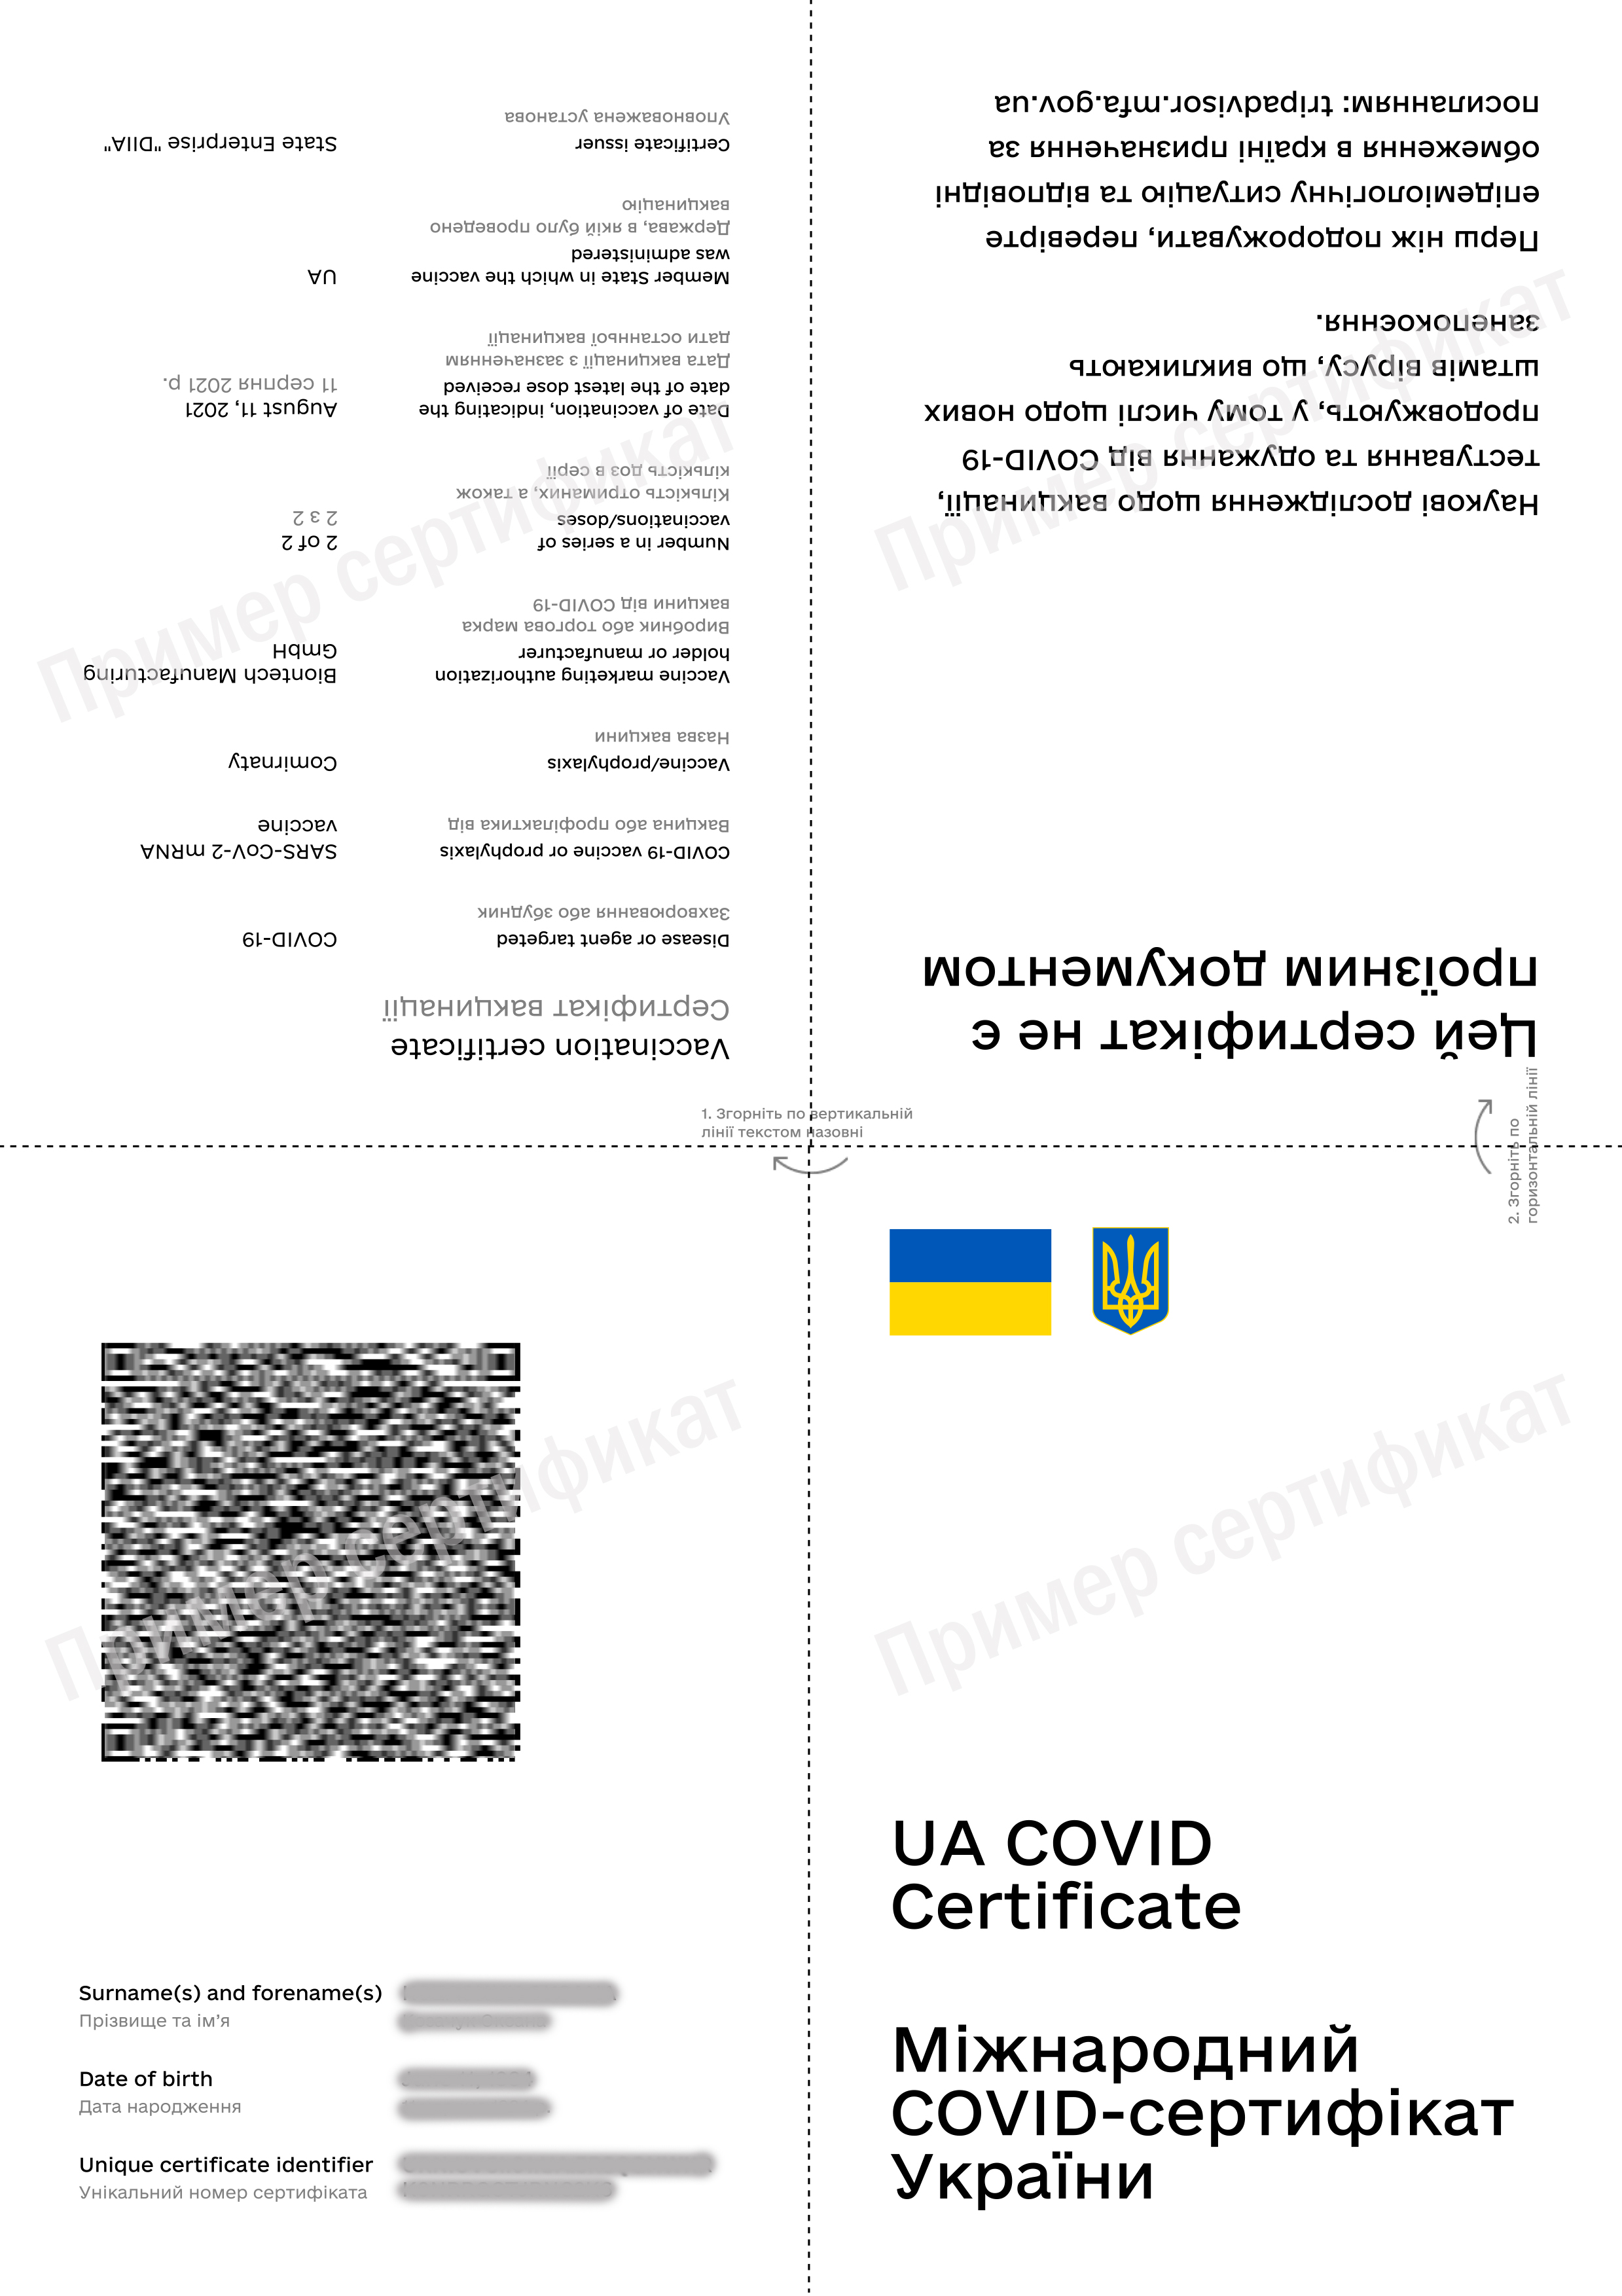 Международный COVID-сертификат Украины, фото